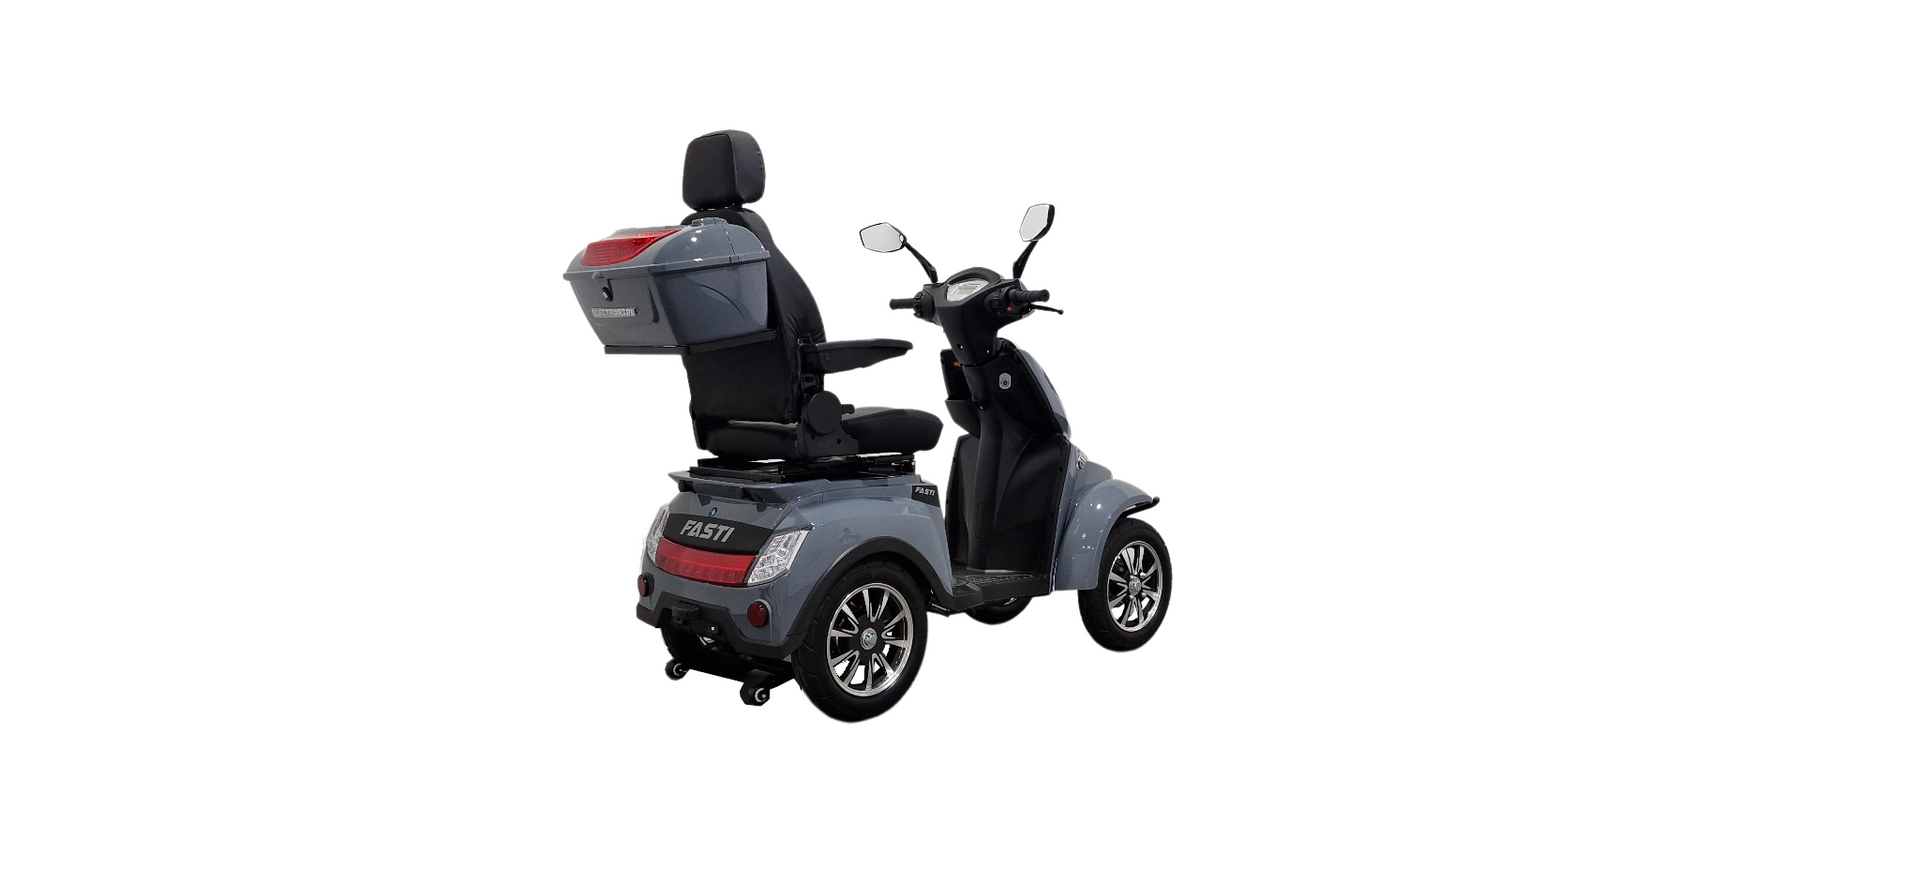 Scooter électrique pour PMR FASTI MAX ELECTORIDE avec siège, batterie lithium, moteur 1000W et 4 roues pour une mobilité autonome et sûre